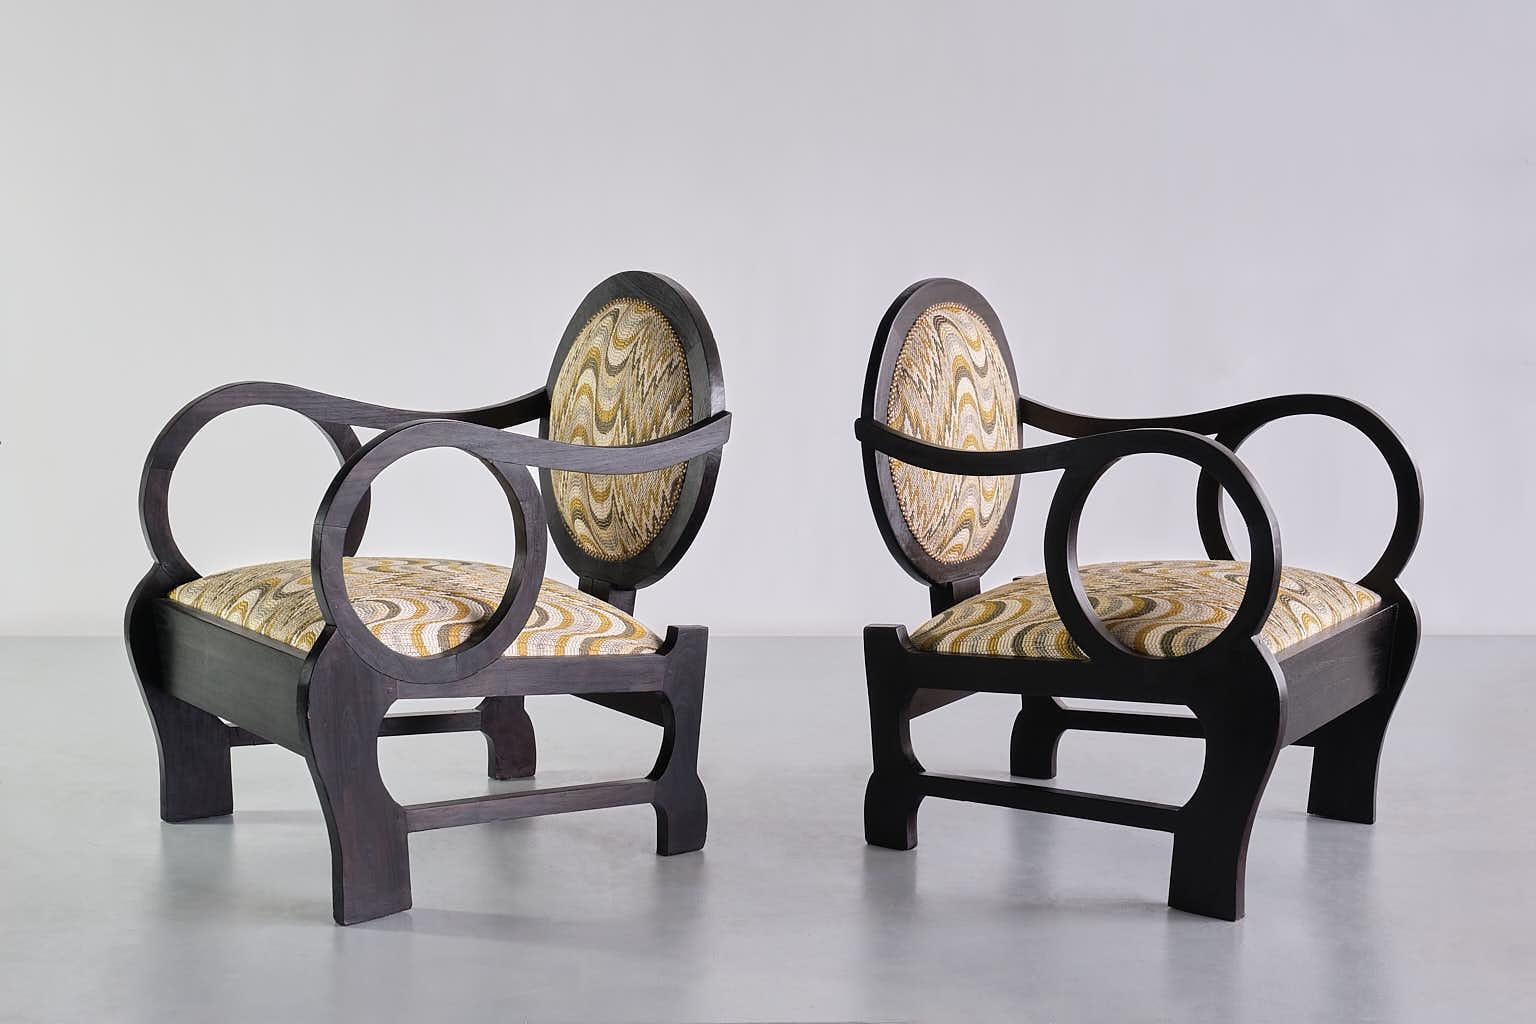 Cette paire de fauteuils remarquable a été produite à la fin des années 1940. Ce dessin rare est attribué au designer hongrois Lajos Kozma.
Kozma travaillait dans la tradition décorative spécifique de l'Europe centrale, qui combinait des lignes